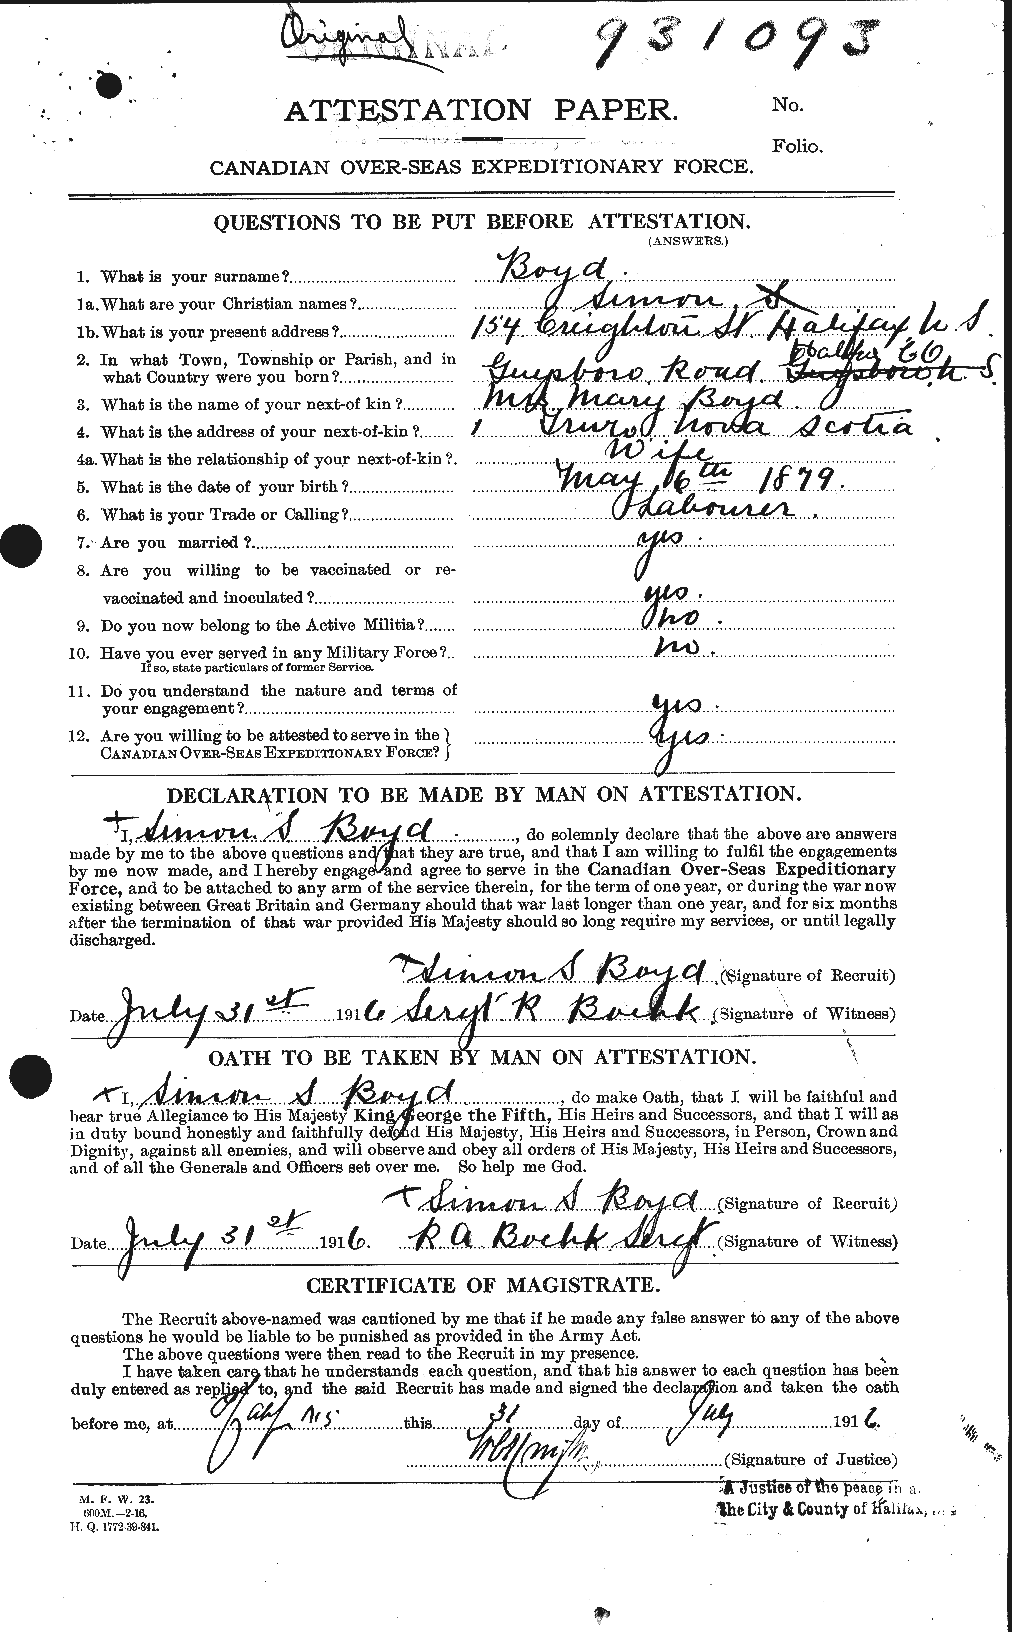 Dossiers du Personnel de la Première Guerre mondiale - CEC 257885a